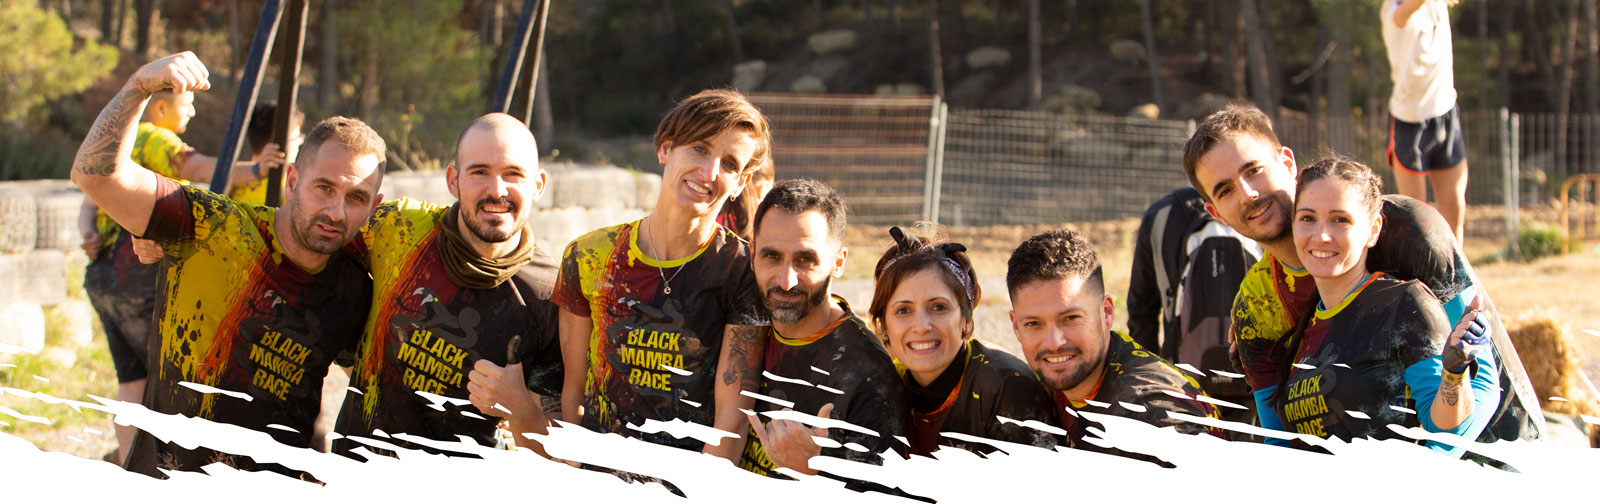 Grupo de deportistas de carrera de obstaculos con camiseta negra black mamba